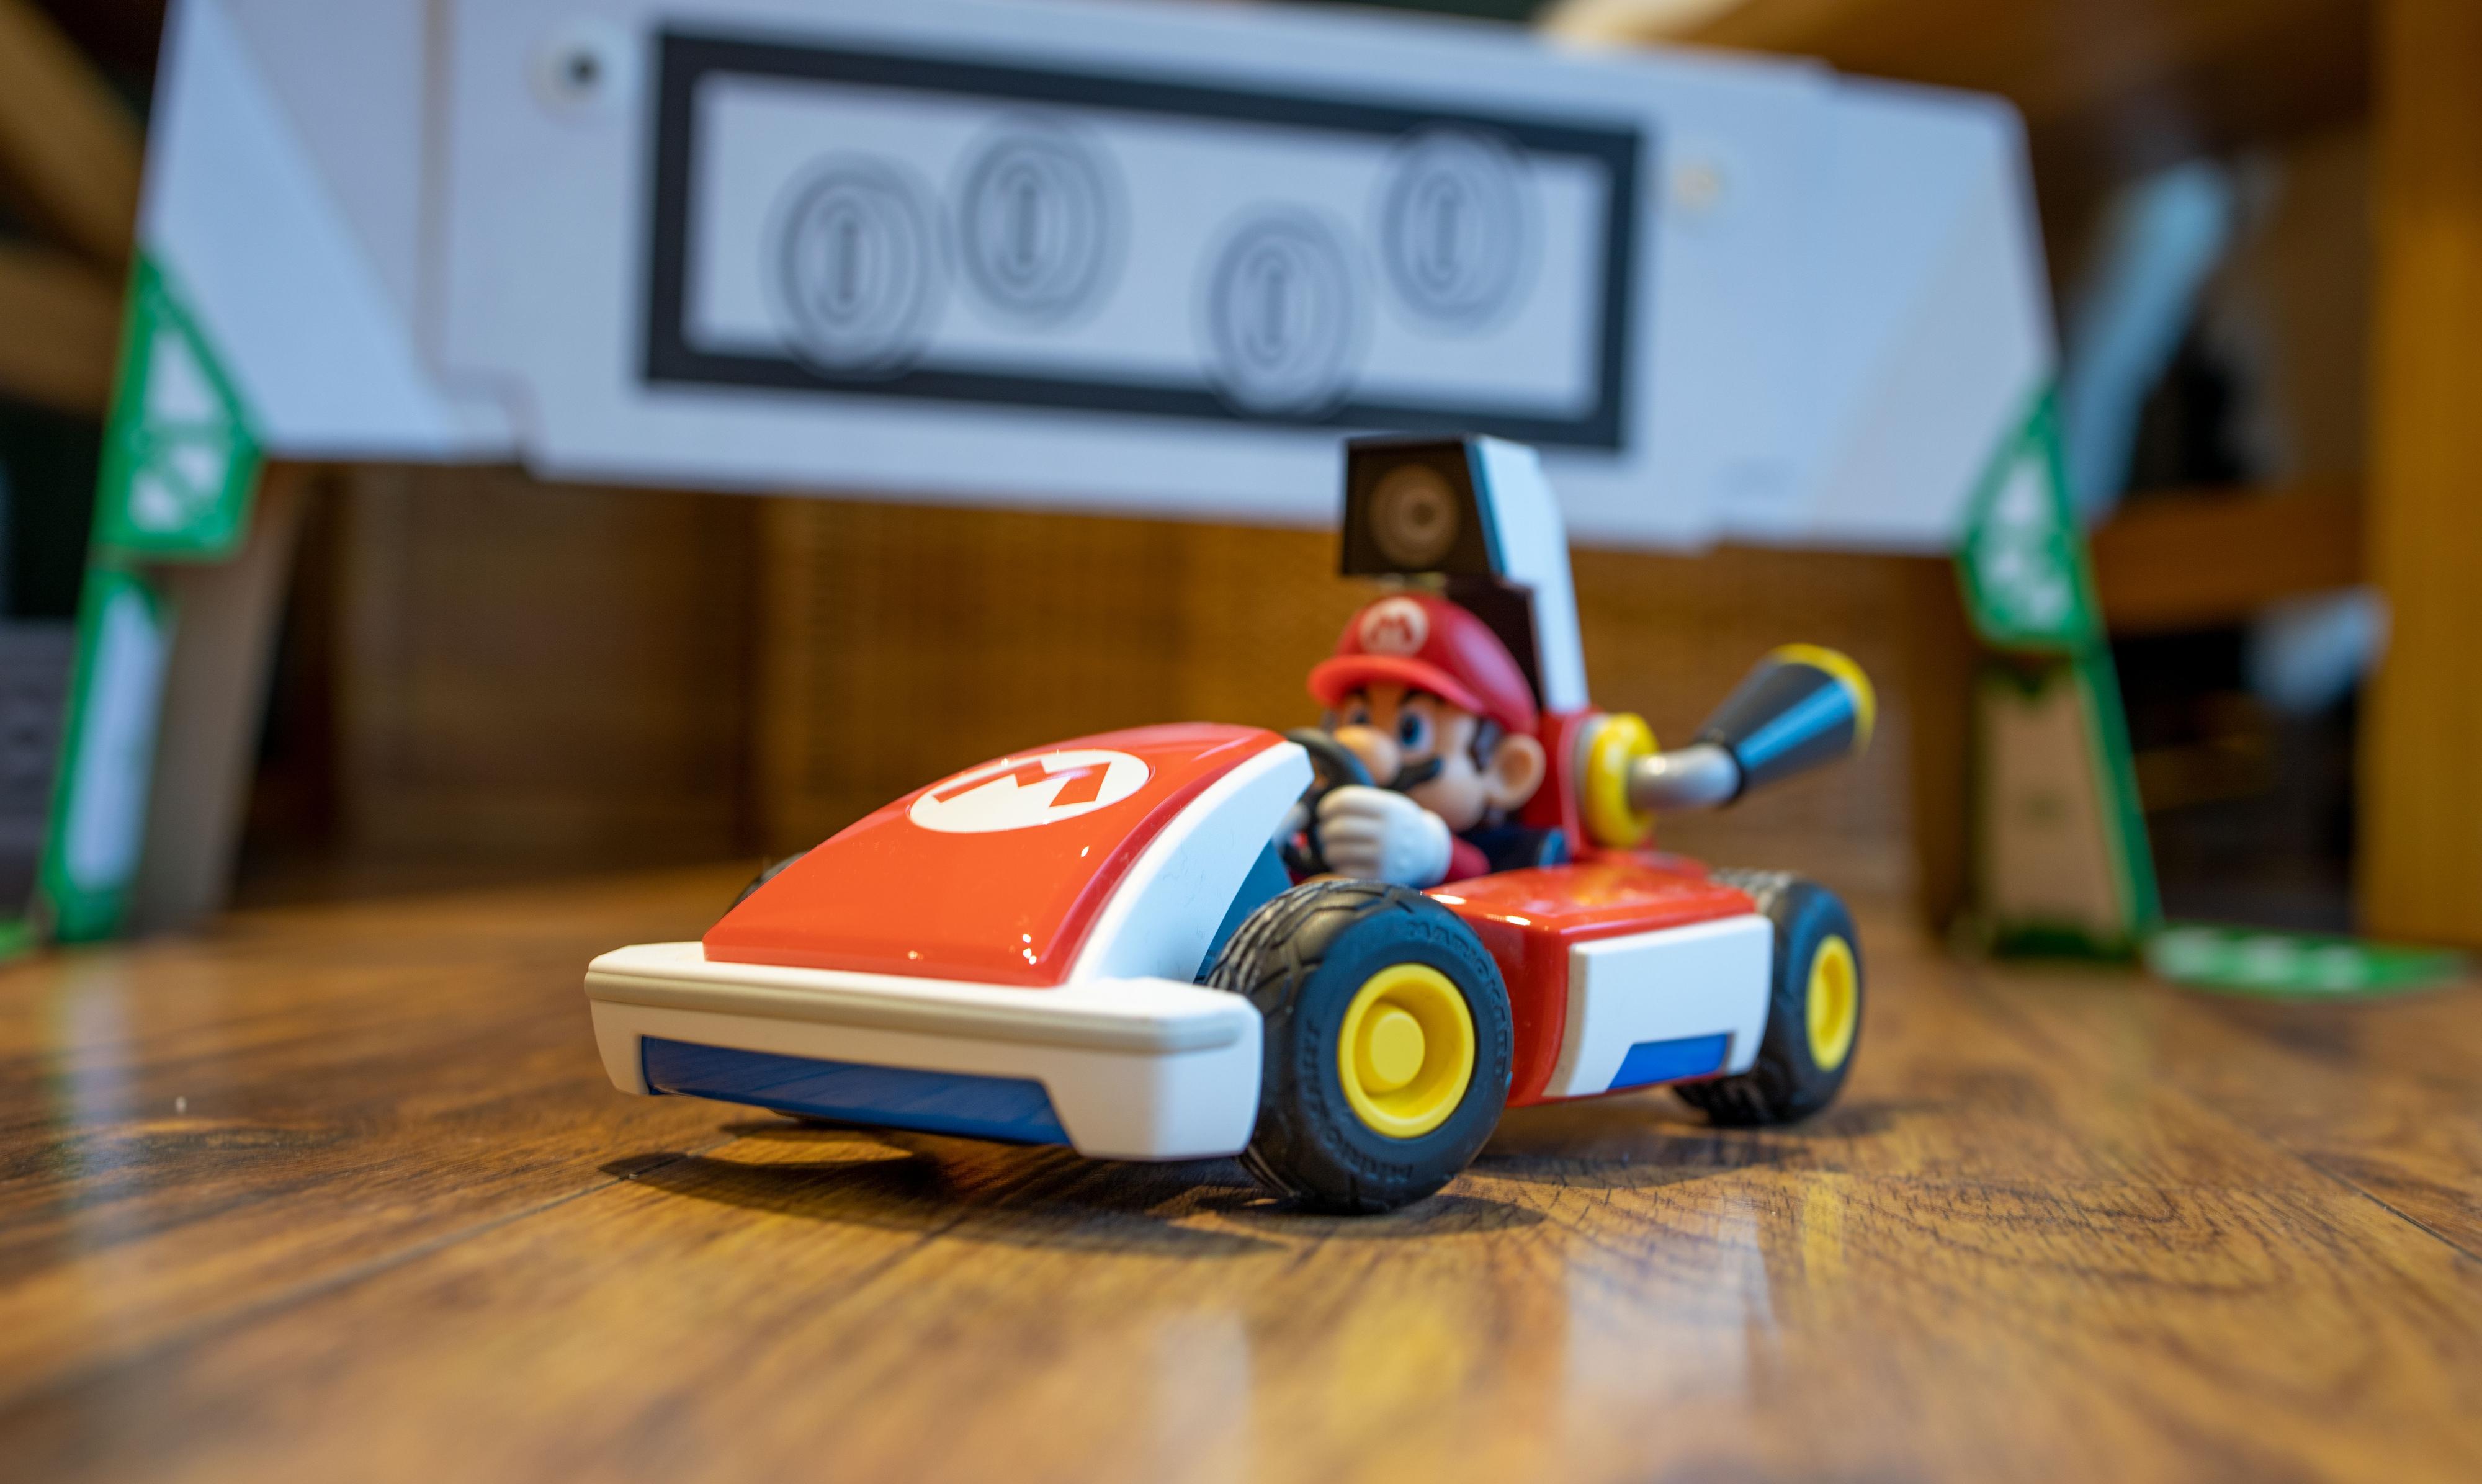 Denne lille radiostyrte bilen, med kamera på toppen, lar deg spille Mario Kart på stuegulvet.